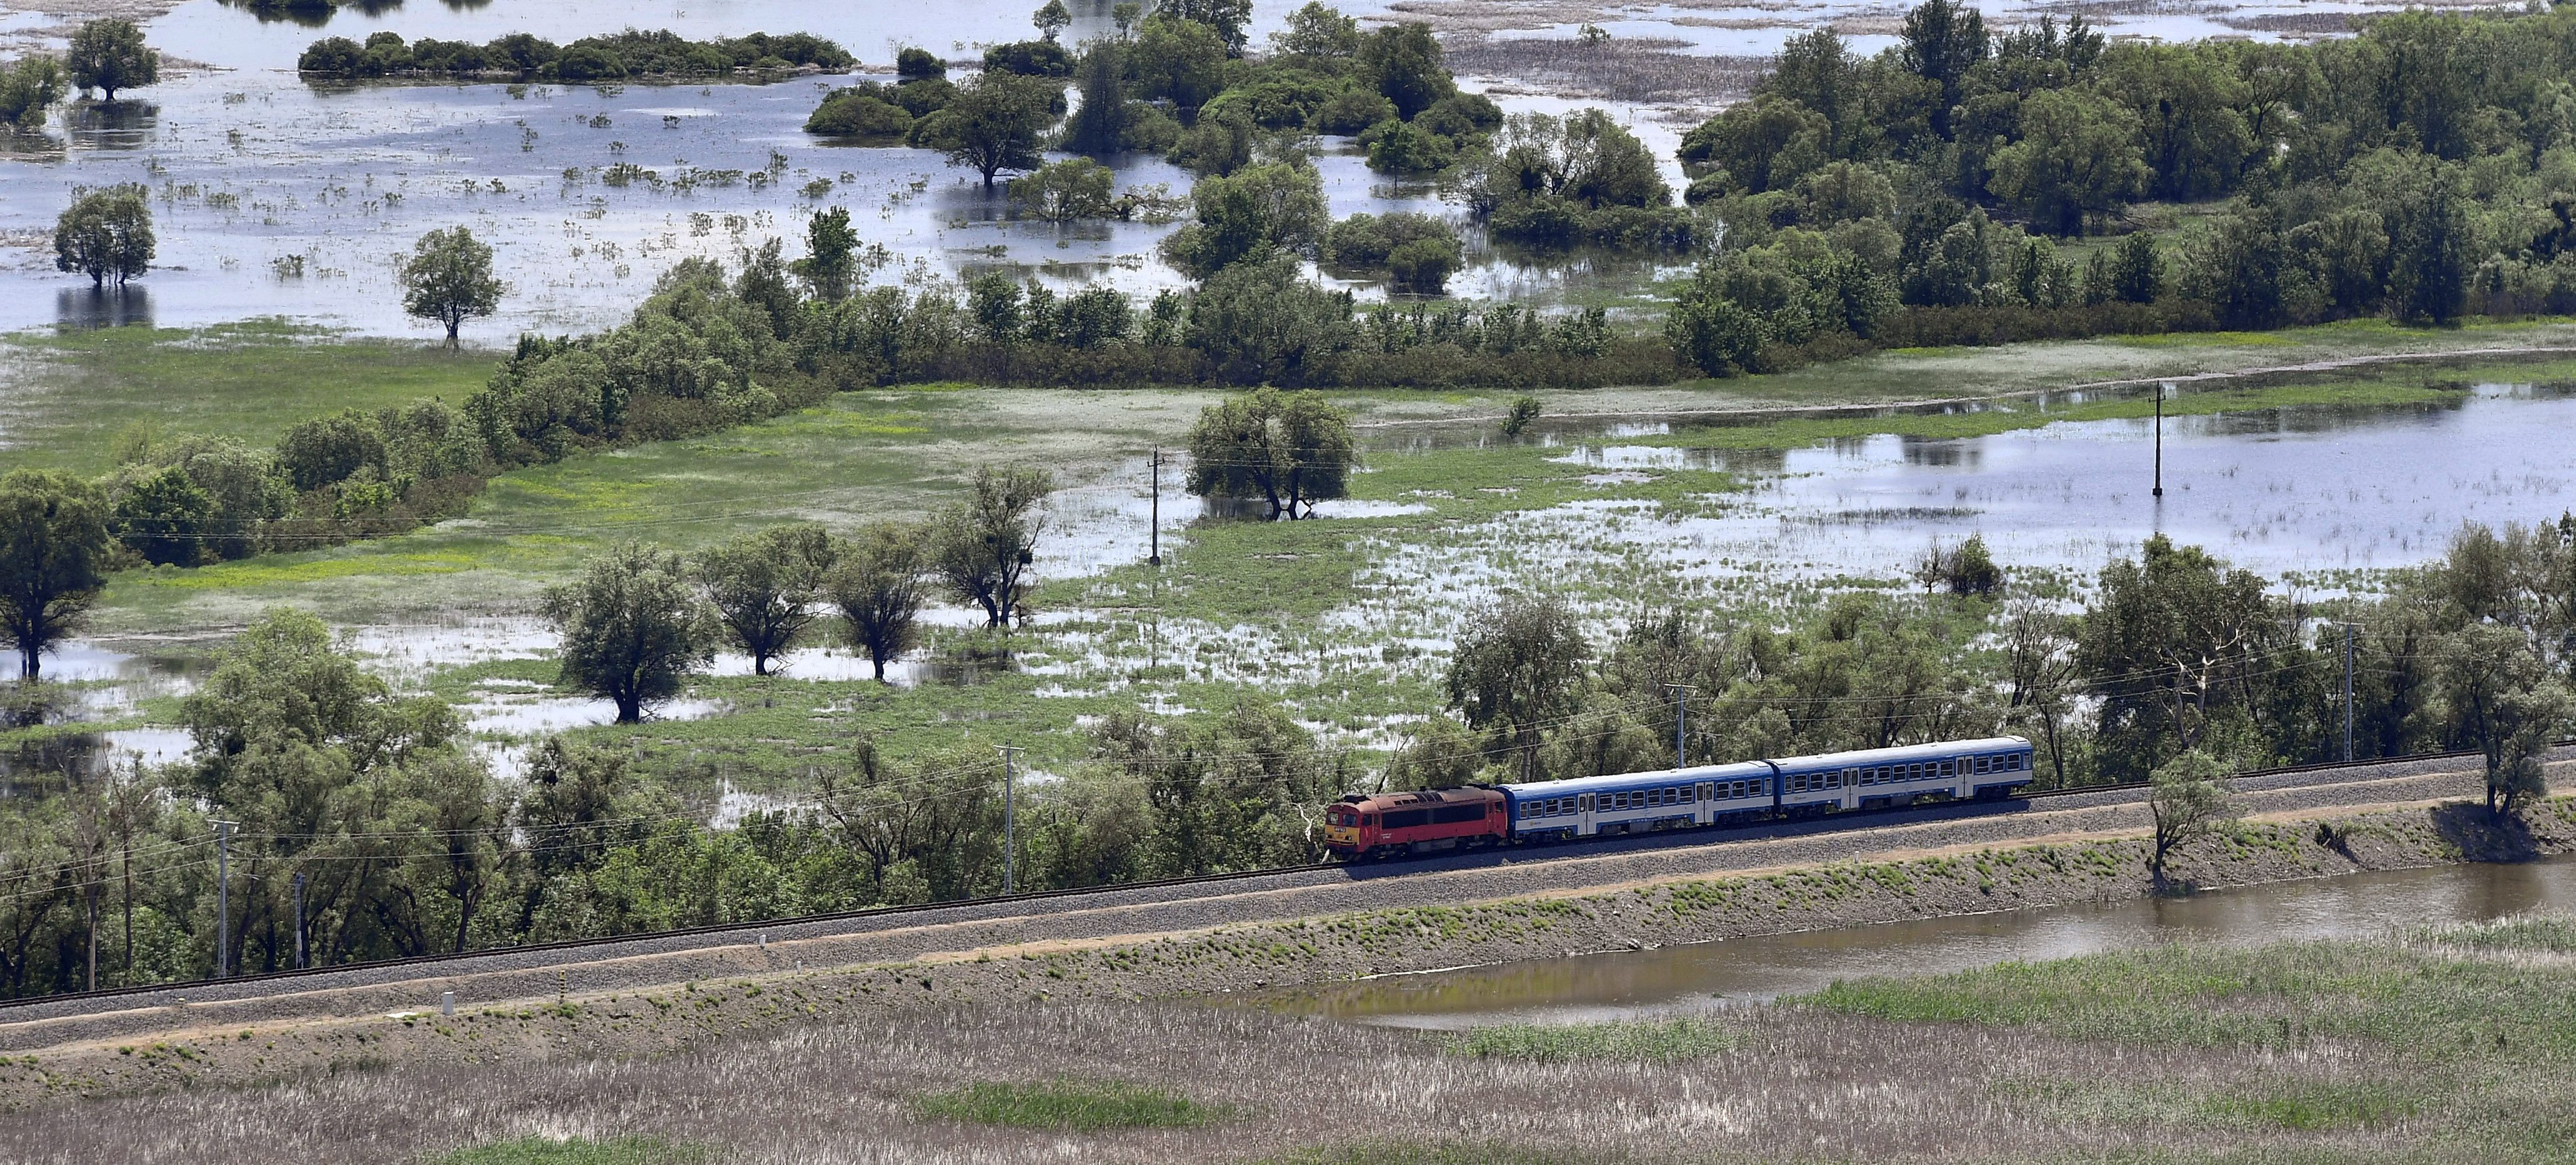 mađarska vlak željeznica